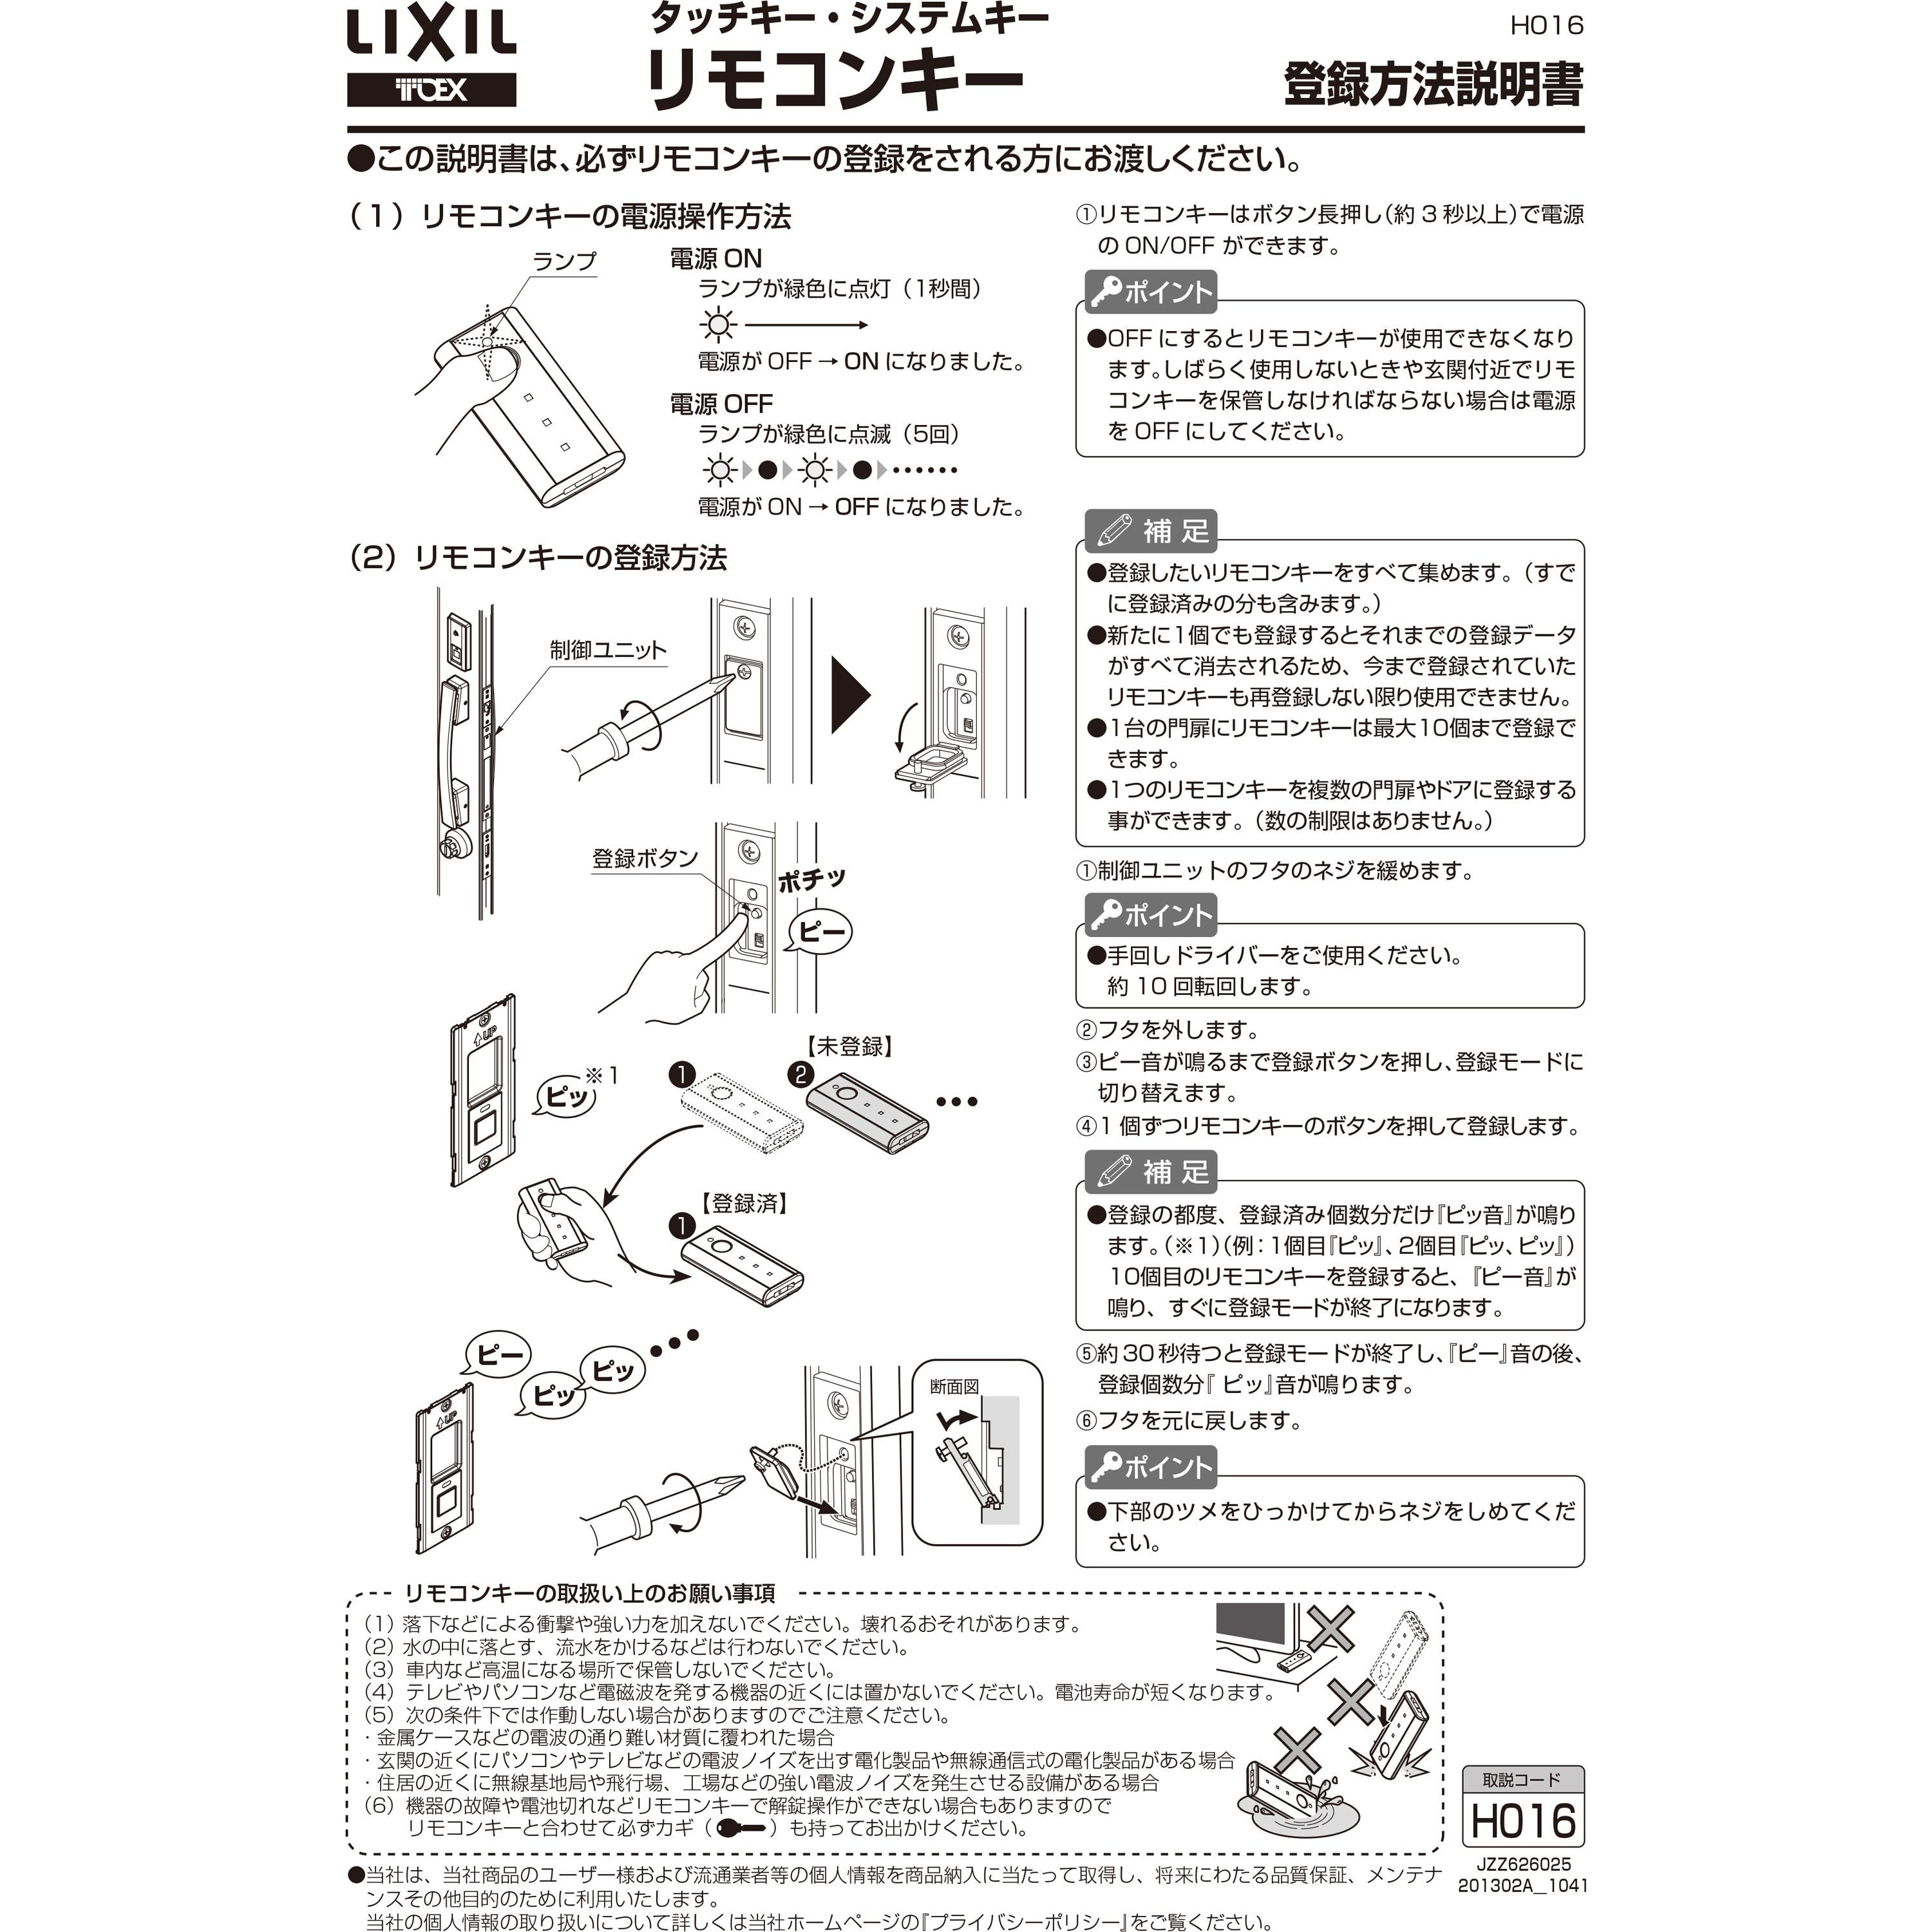 6495円 【63%OFF!】 LIXIL リクシル TOSTEM ドア タッチキー システムキー用リモコンキー Z-221-DVBA